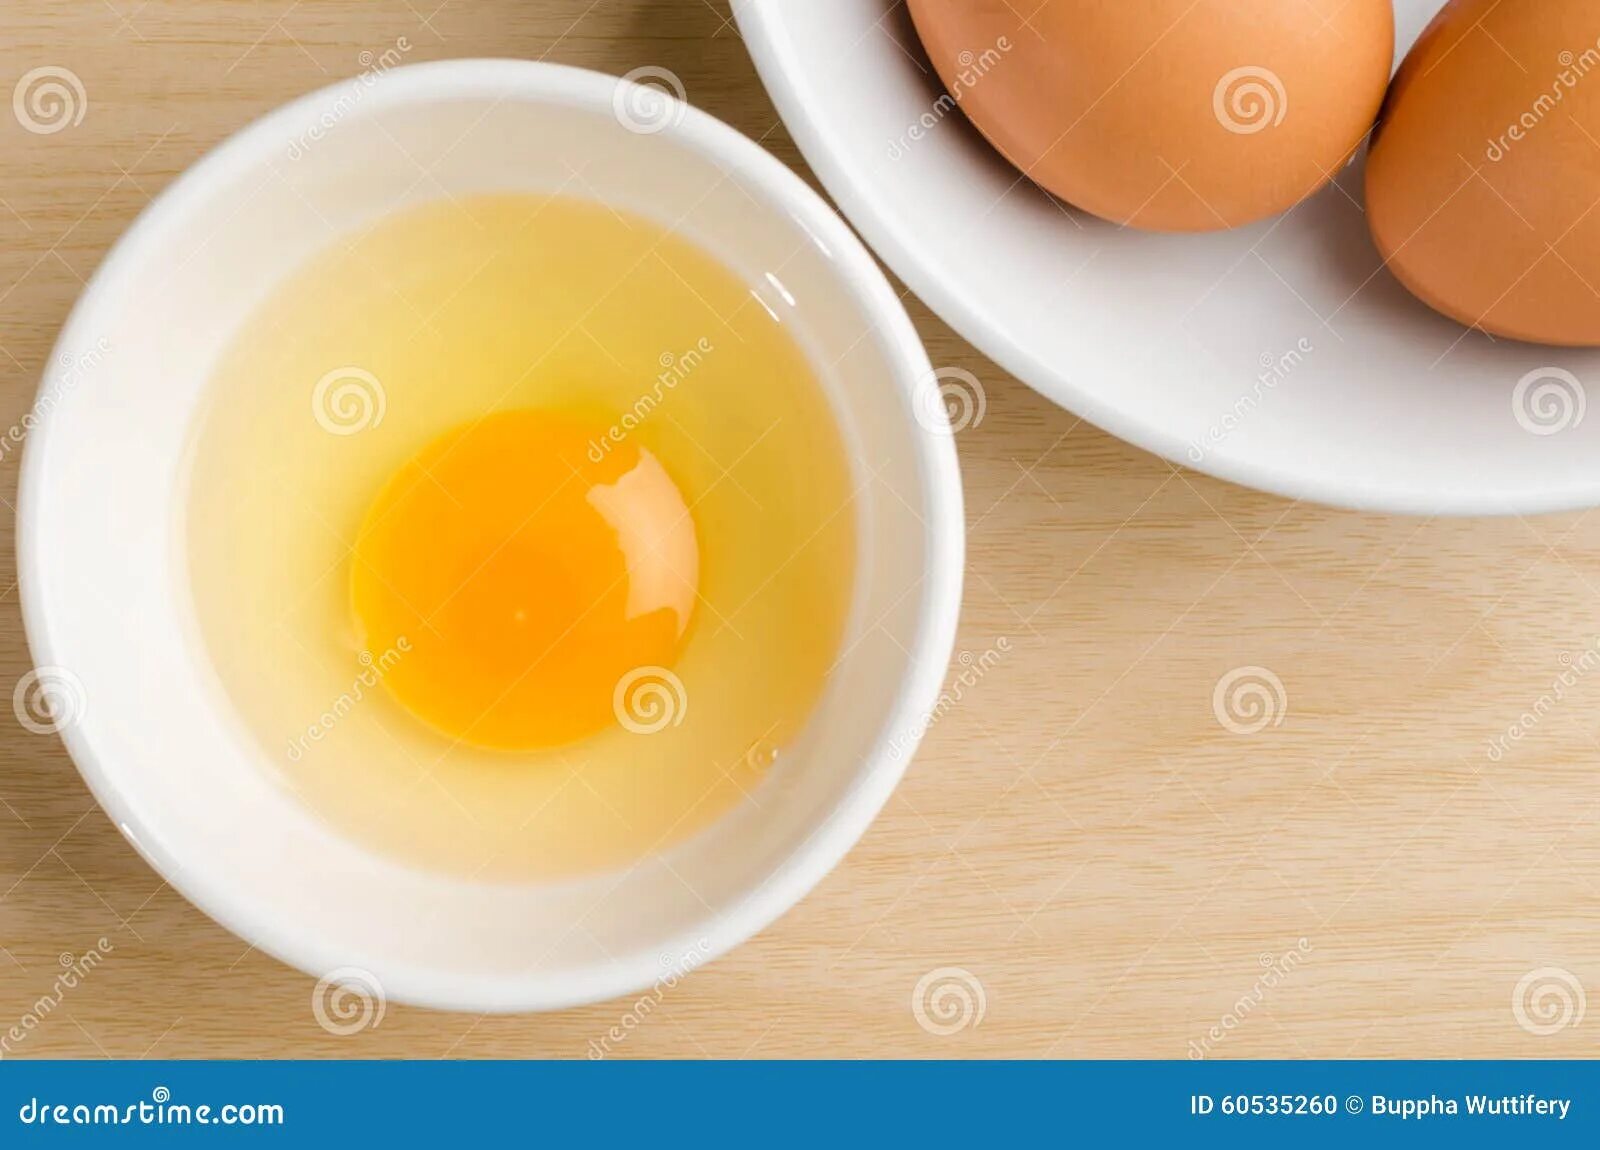 Печень яичный желток. Почки желток яйца. Эмульсия яичного желтка с теллуритом. Яичный желток, печень, молочные продукты.